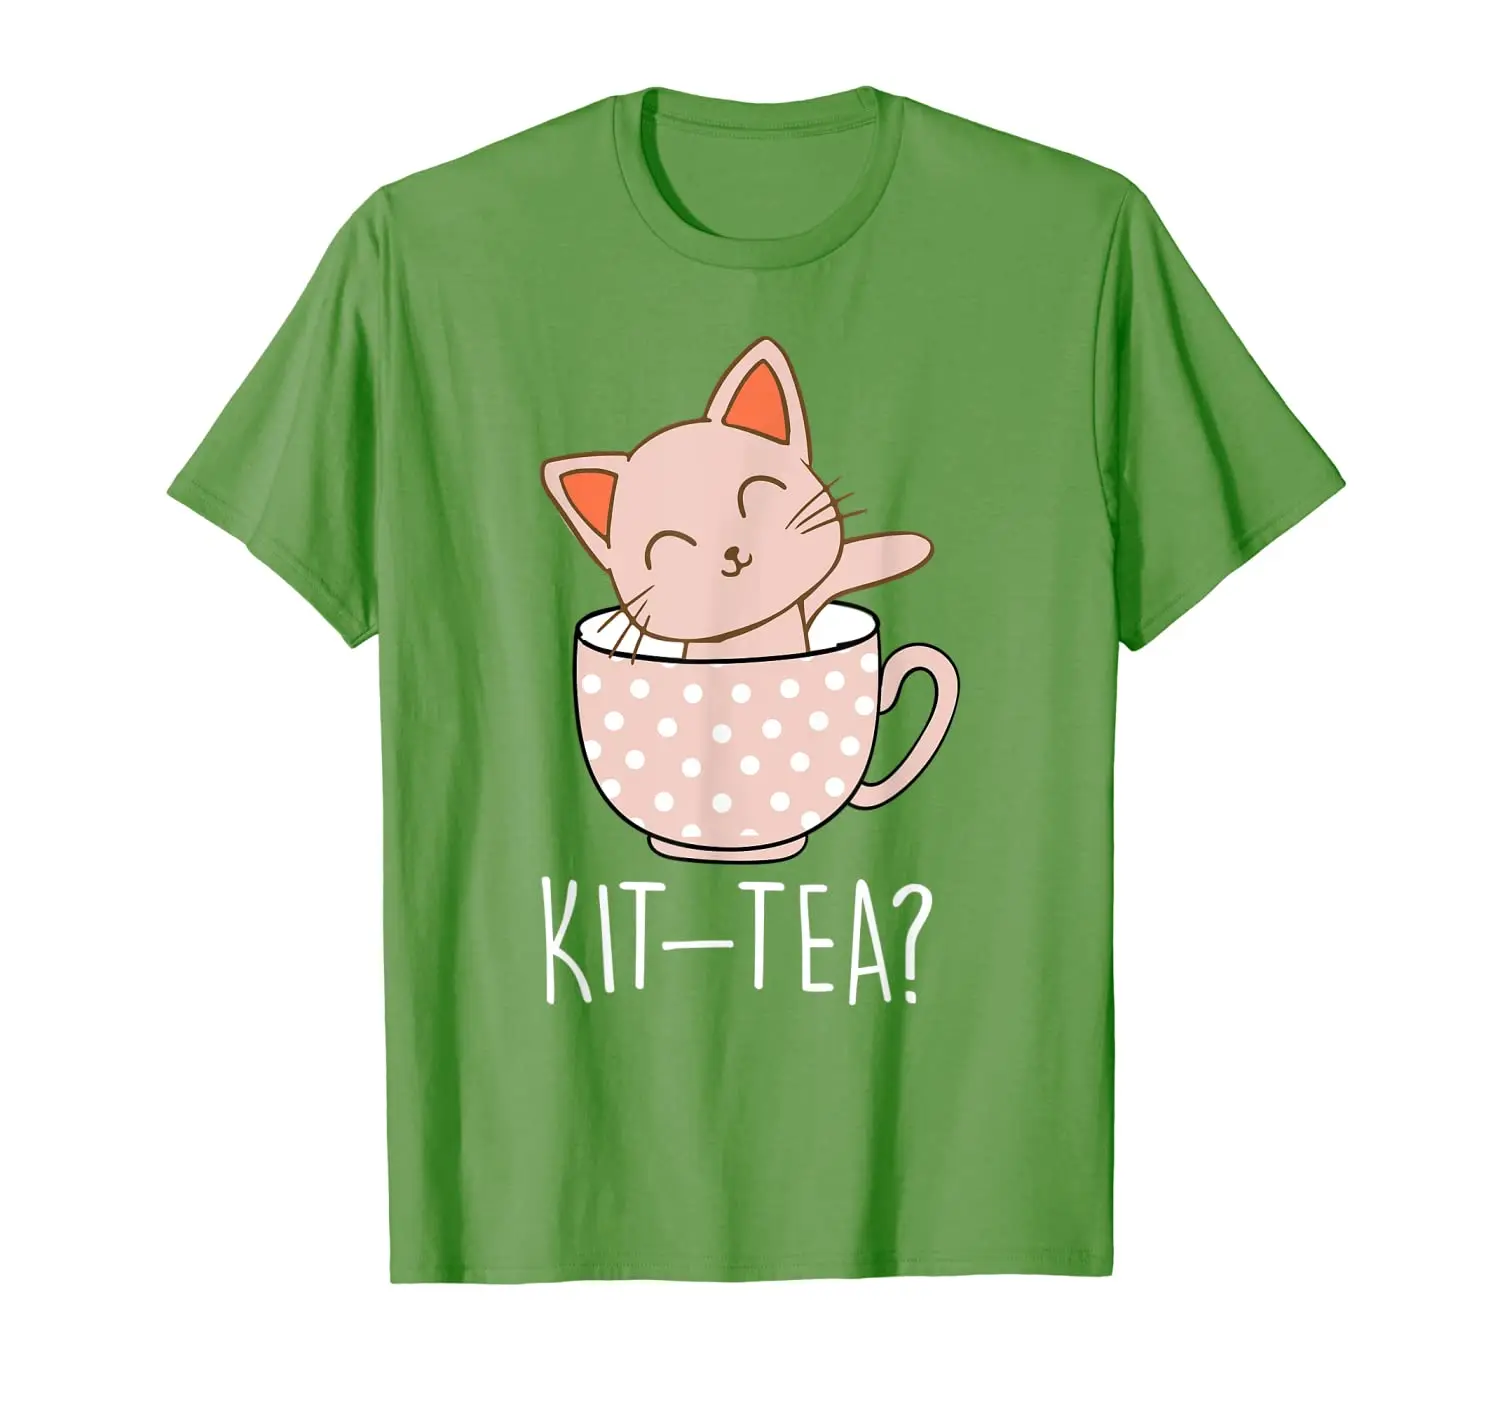 

Футболка с кошкой-котенок в чайной чашке, подарок для любителей чая и кошек